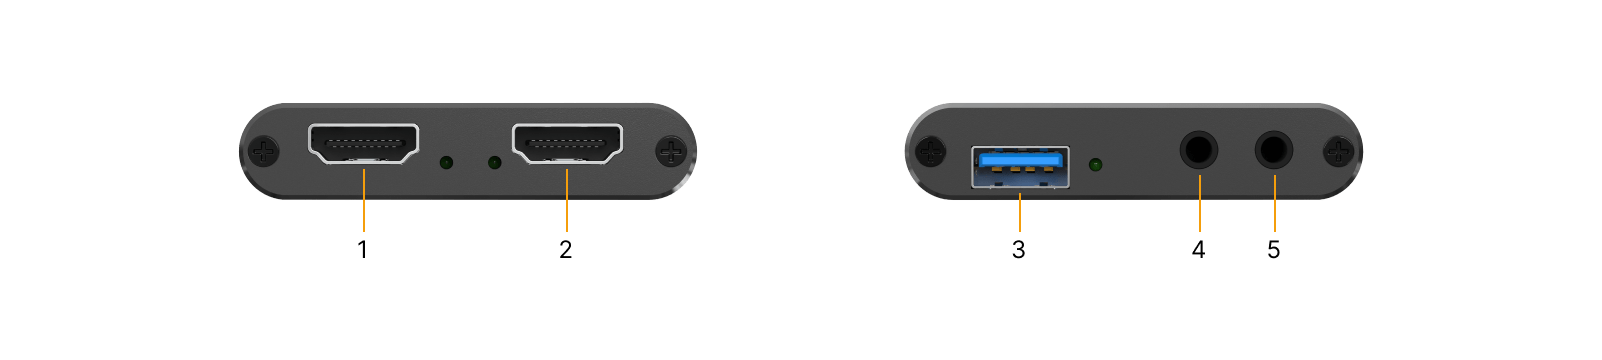 BG-CAP-HA BG-CAP-HA USB 3.0 Powered HDMI Capture Device ports